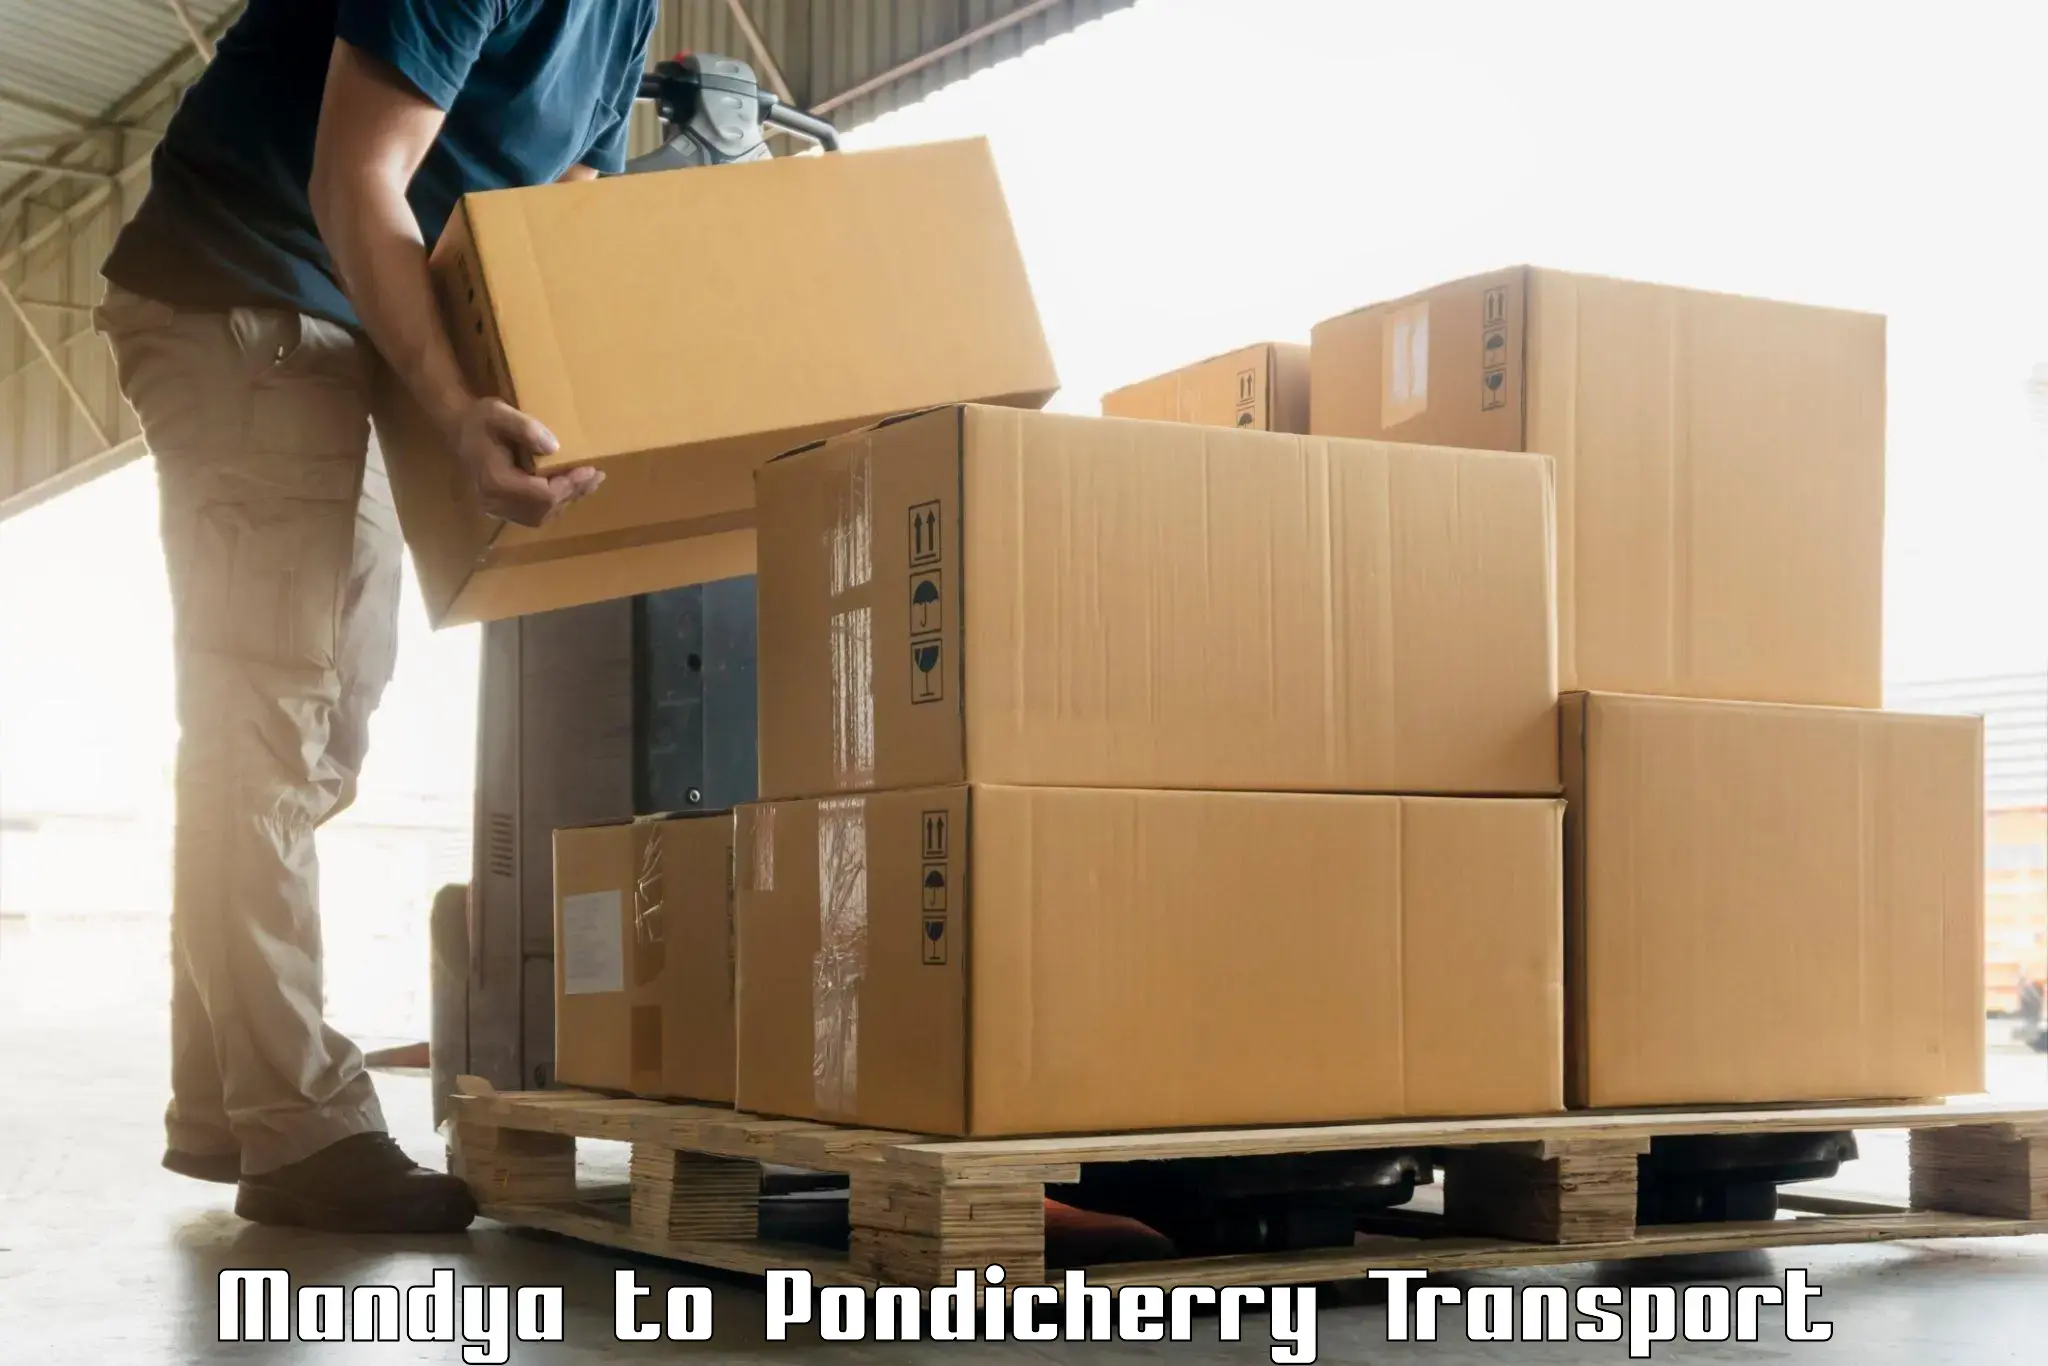 Bike transfer Mandya to Pondicherry University